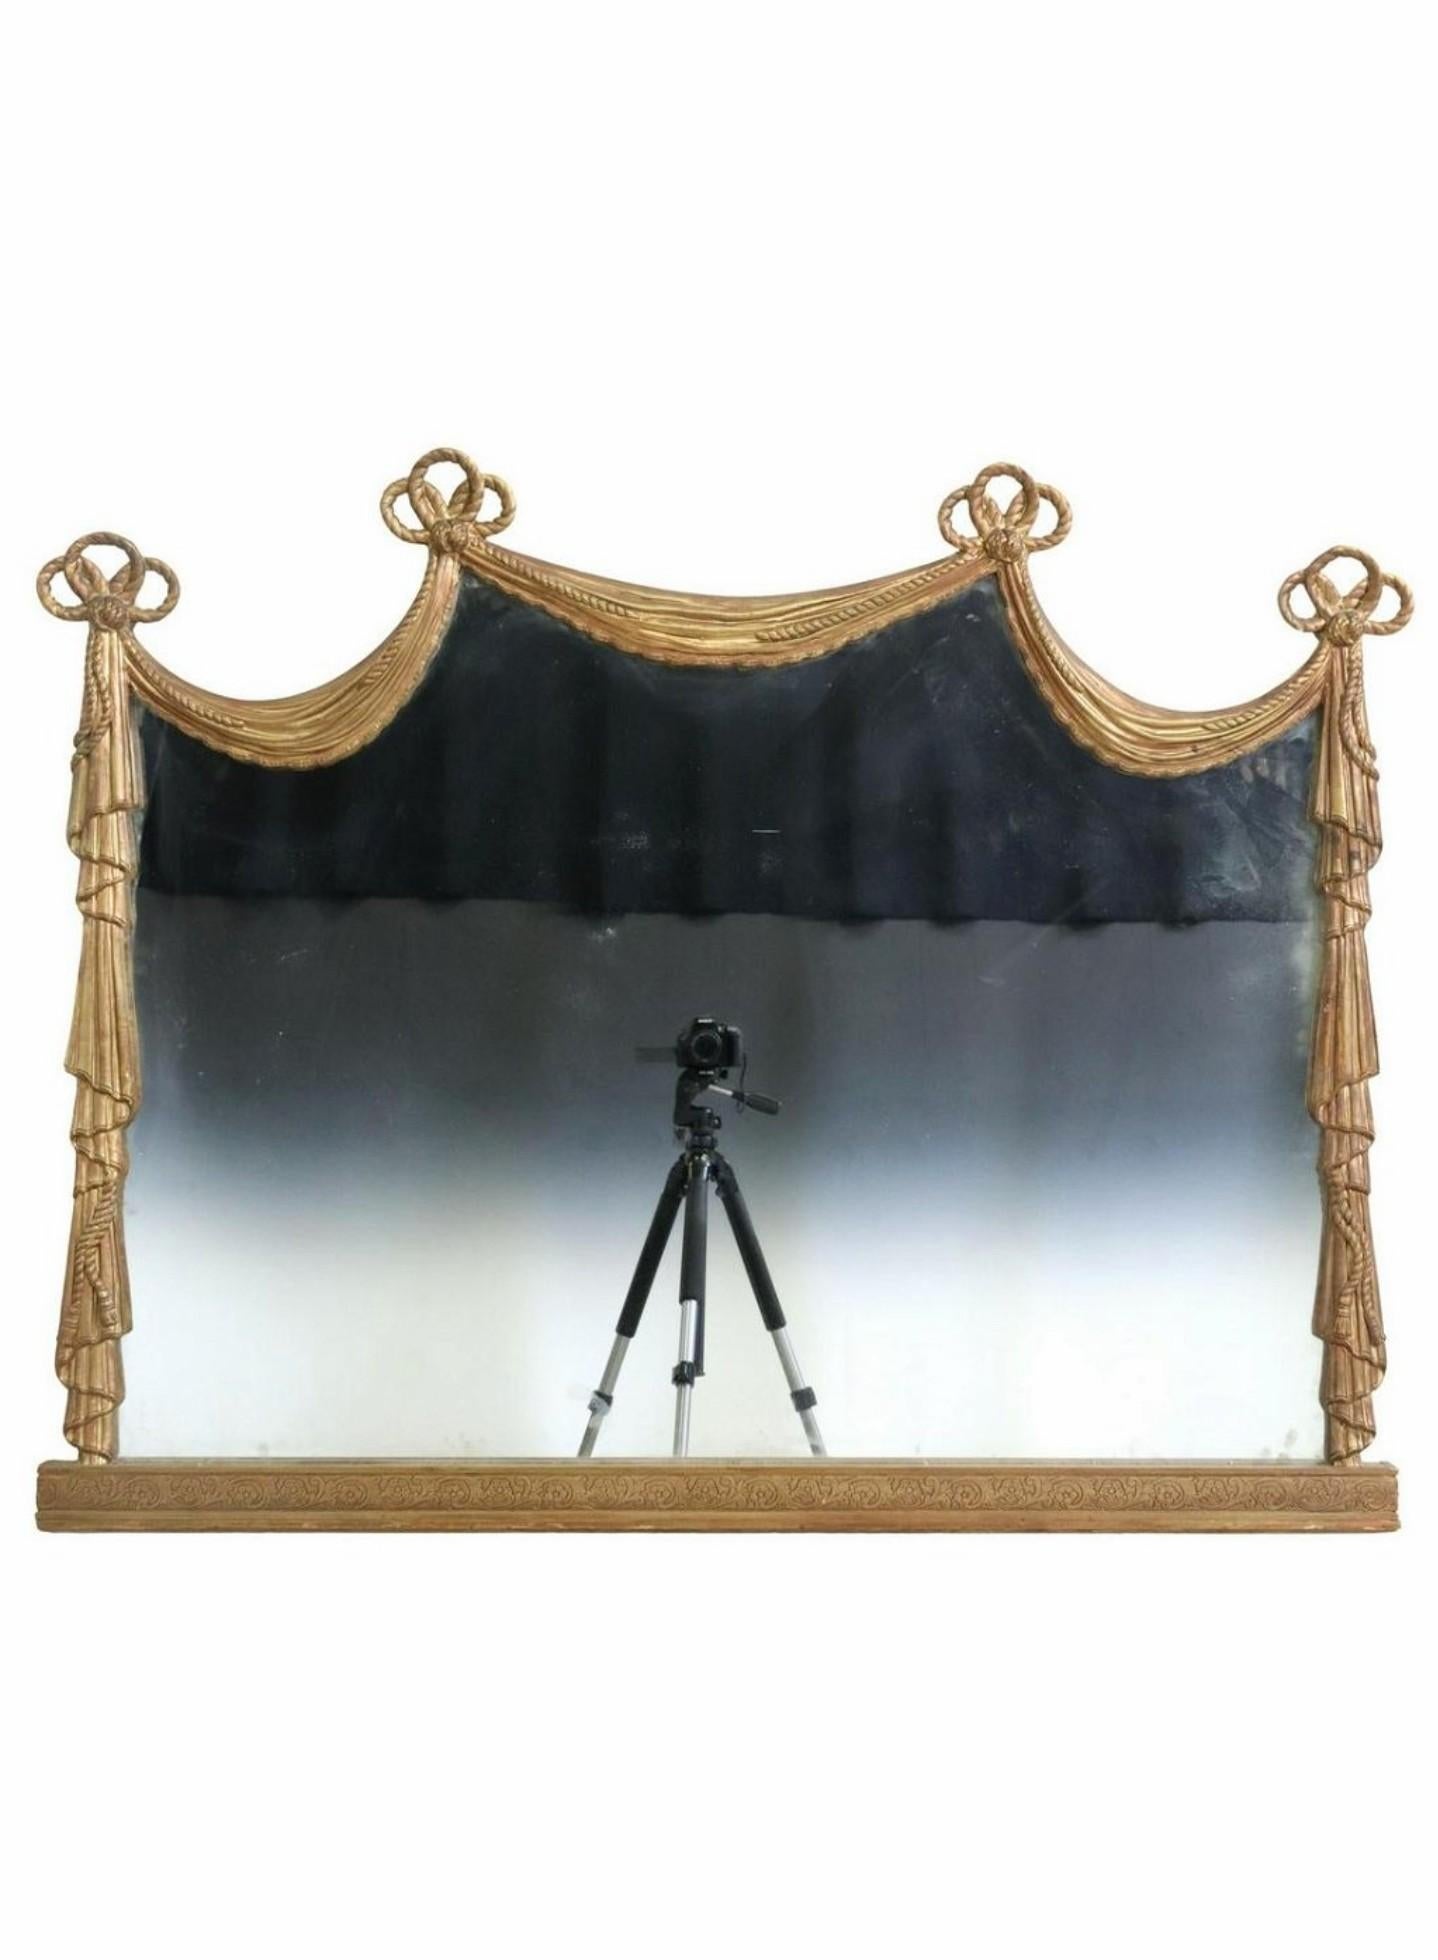 Superbe miroir mural italien néoclassique en bois doré / miroir de manteau de cheminée. circa 1900

Fin du XIXe siècle / début du XXe siècle, miroir architectural en forme de cadre de rideau de fenêtre, exceptionnellement exécuté, avec un cadre